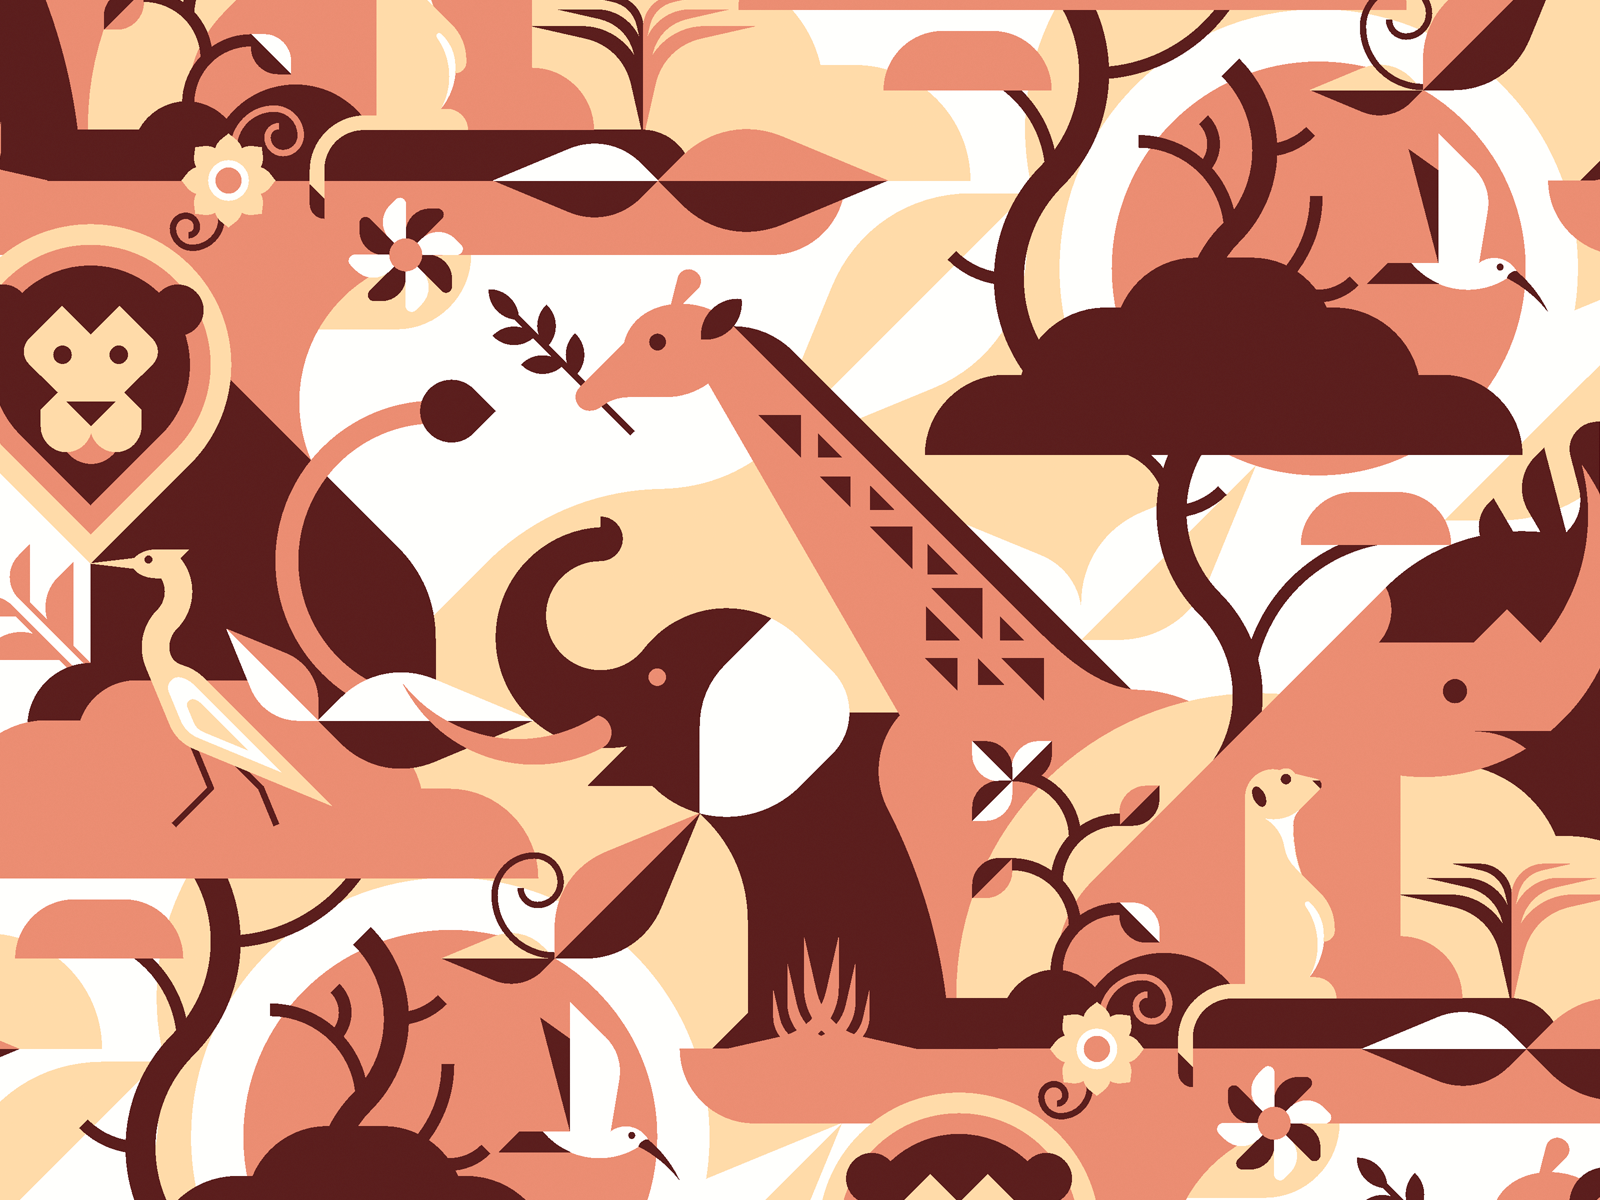 African Savanna Animals Pattern by Alexey Boychenko on Dribbble